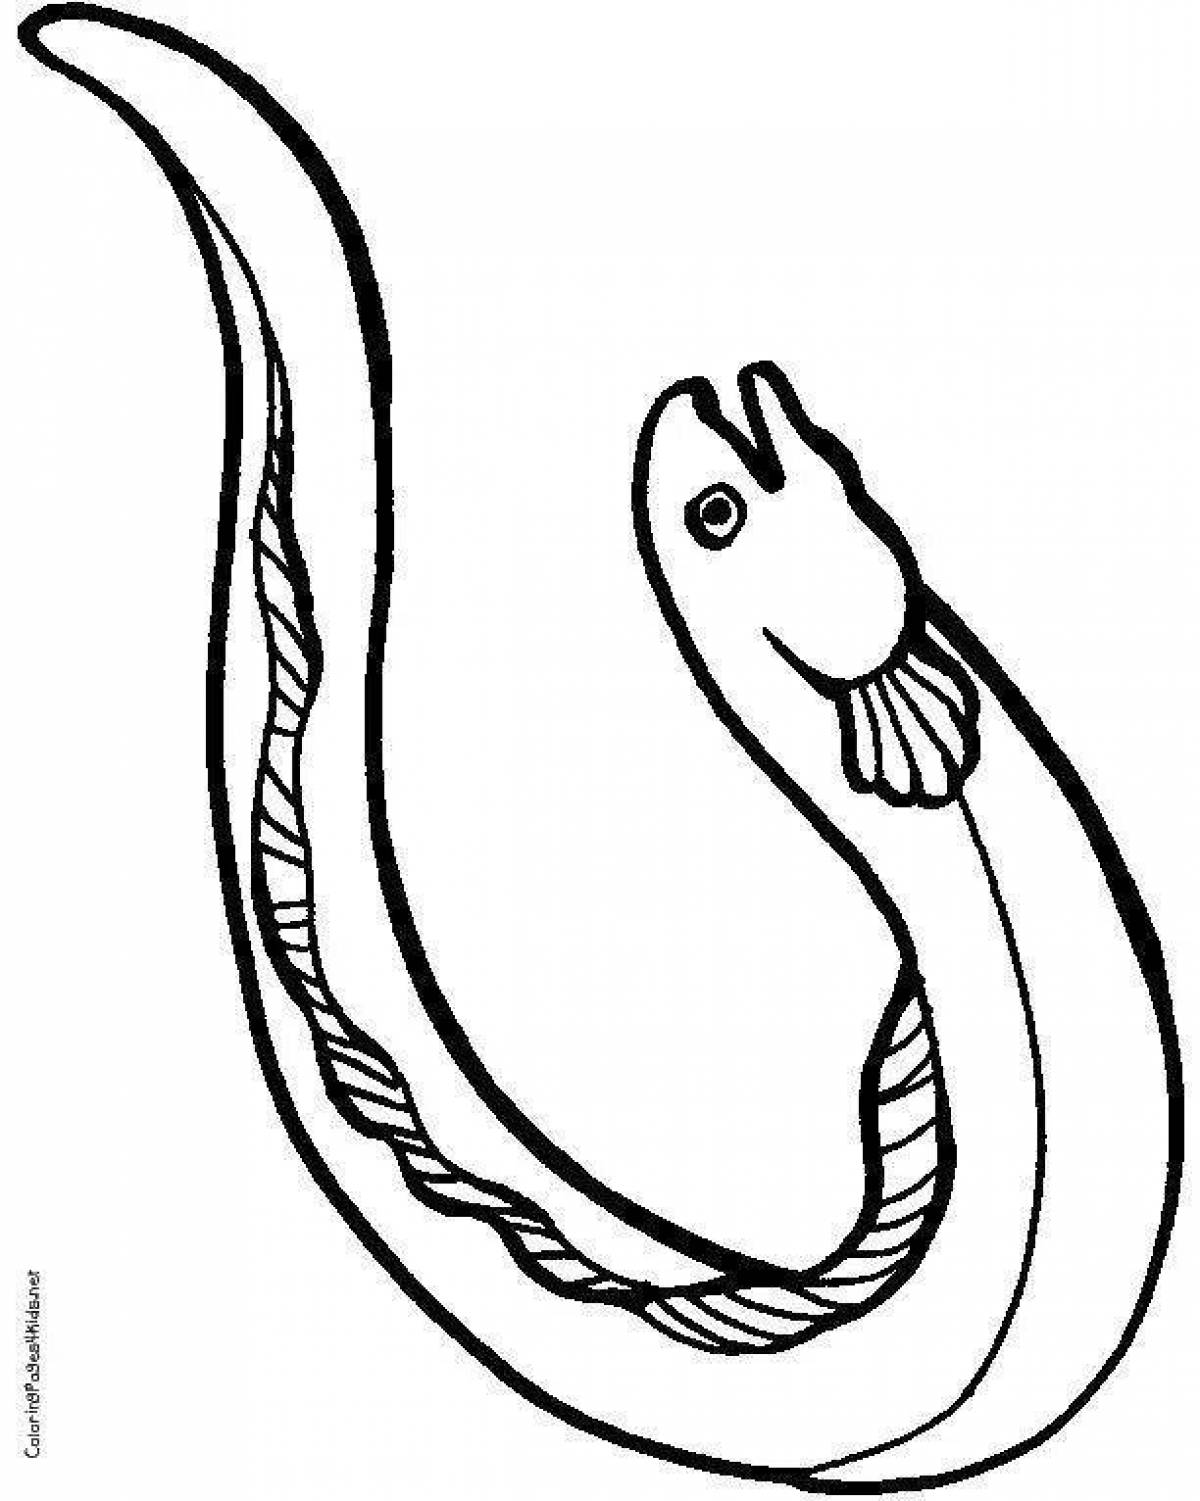 Moray eel #3